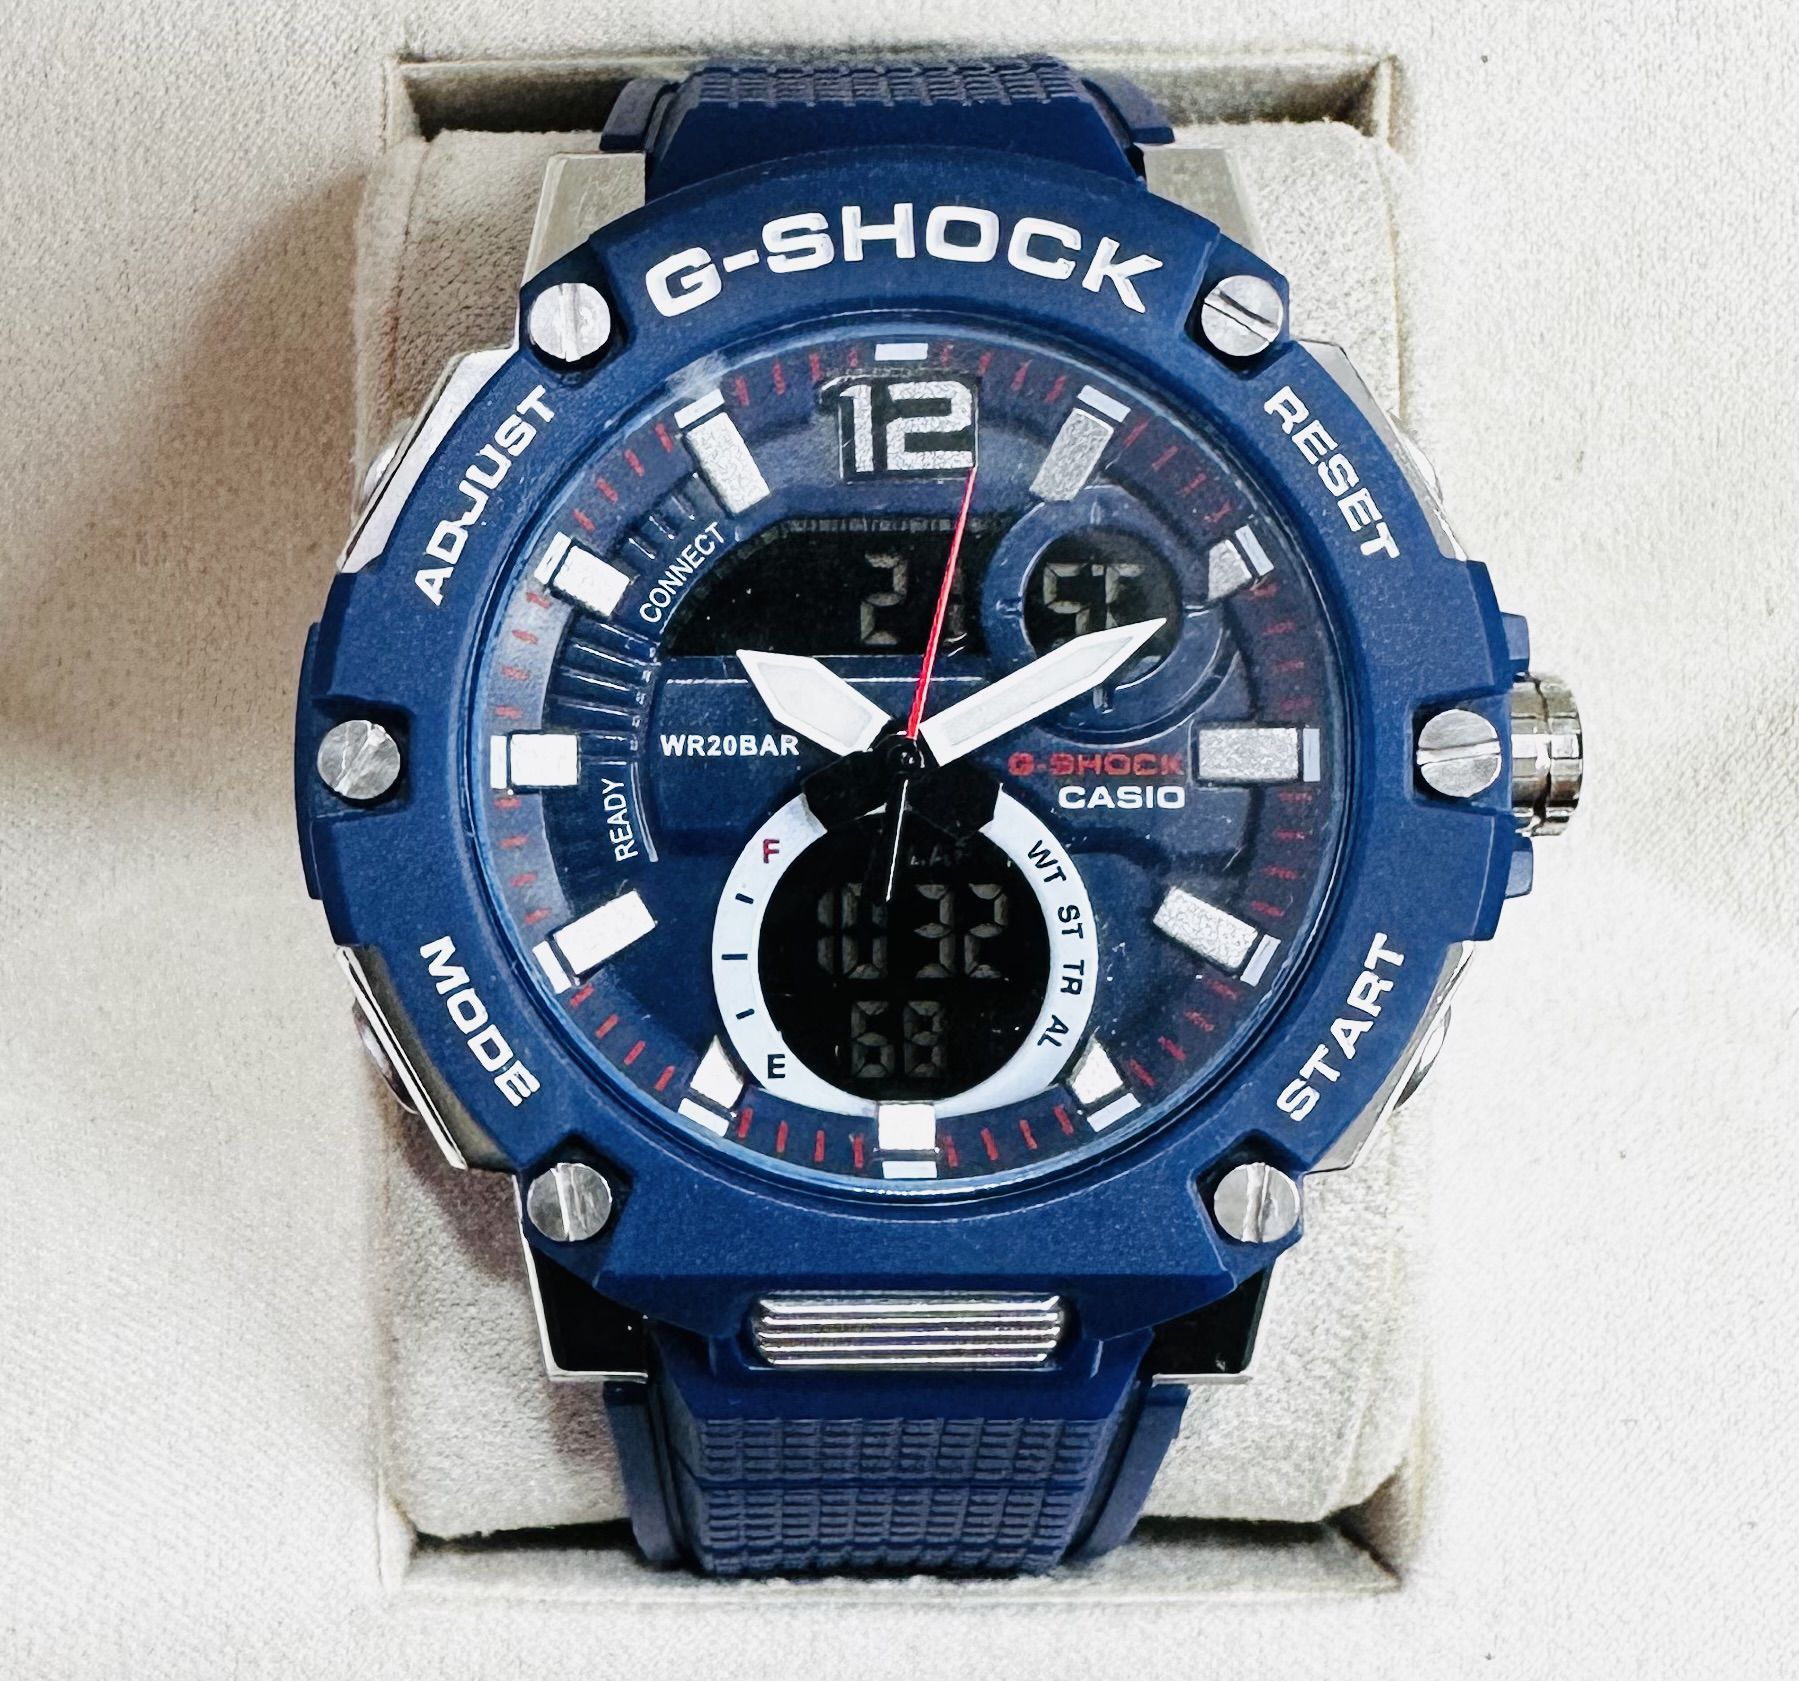 Relógio 1-linha G-shock GB 1000 -Pulseira de Borracha -Azul, Branco, Preto  -A prova d'água -Cod: DSPO68 - VMAX IMPORTS